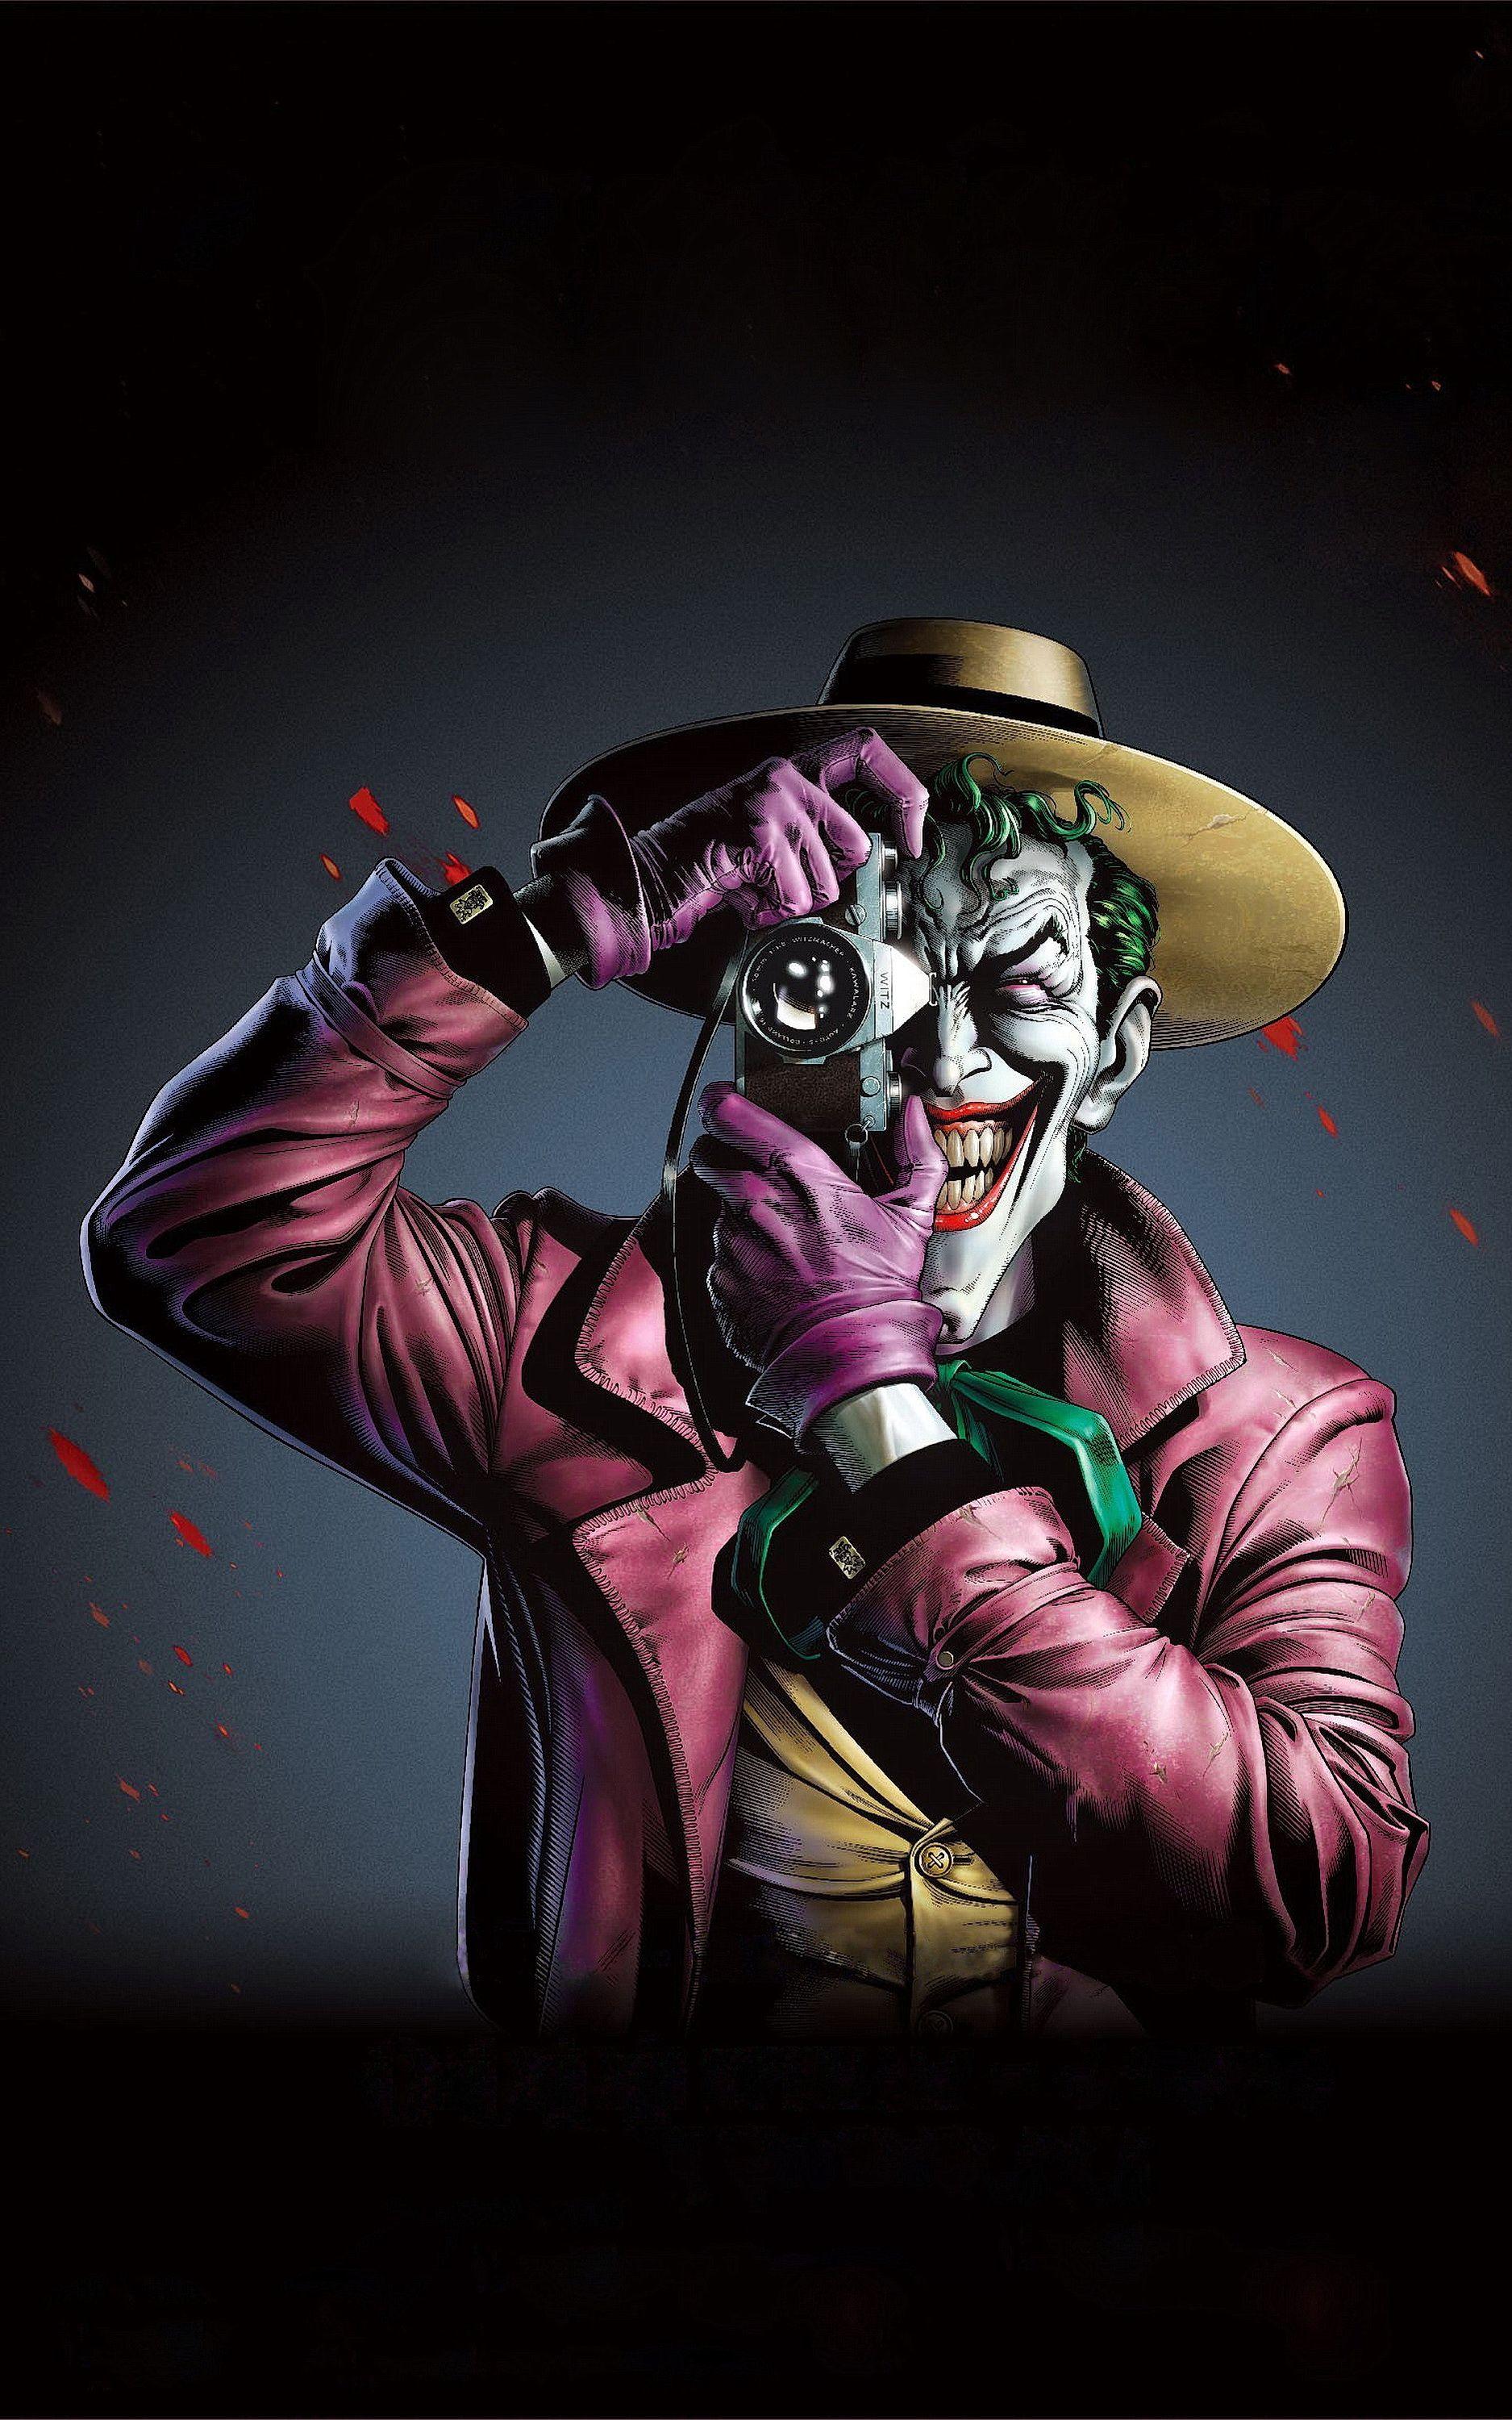 Hintergrundbilder Handy Hd Joker Sexistische hintergrundbilder festlege 